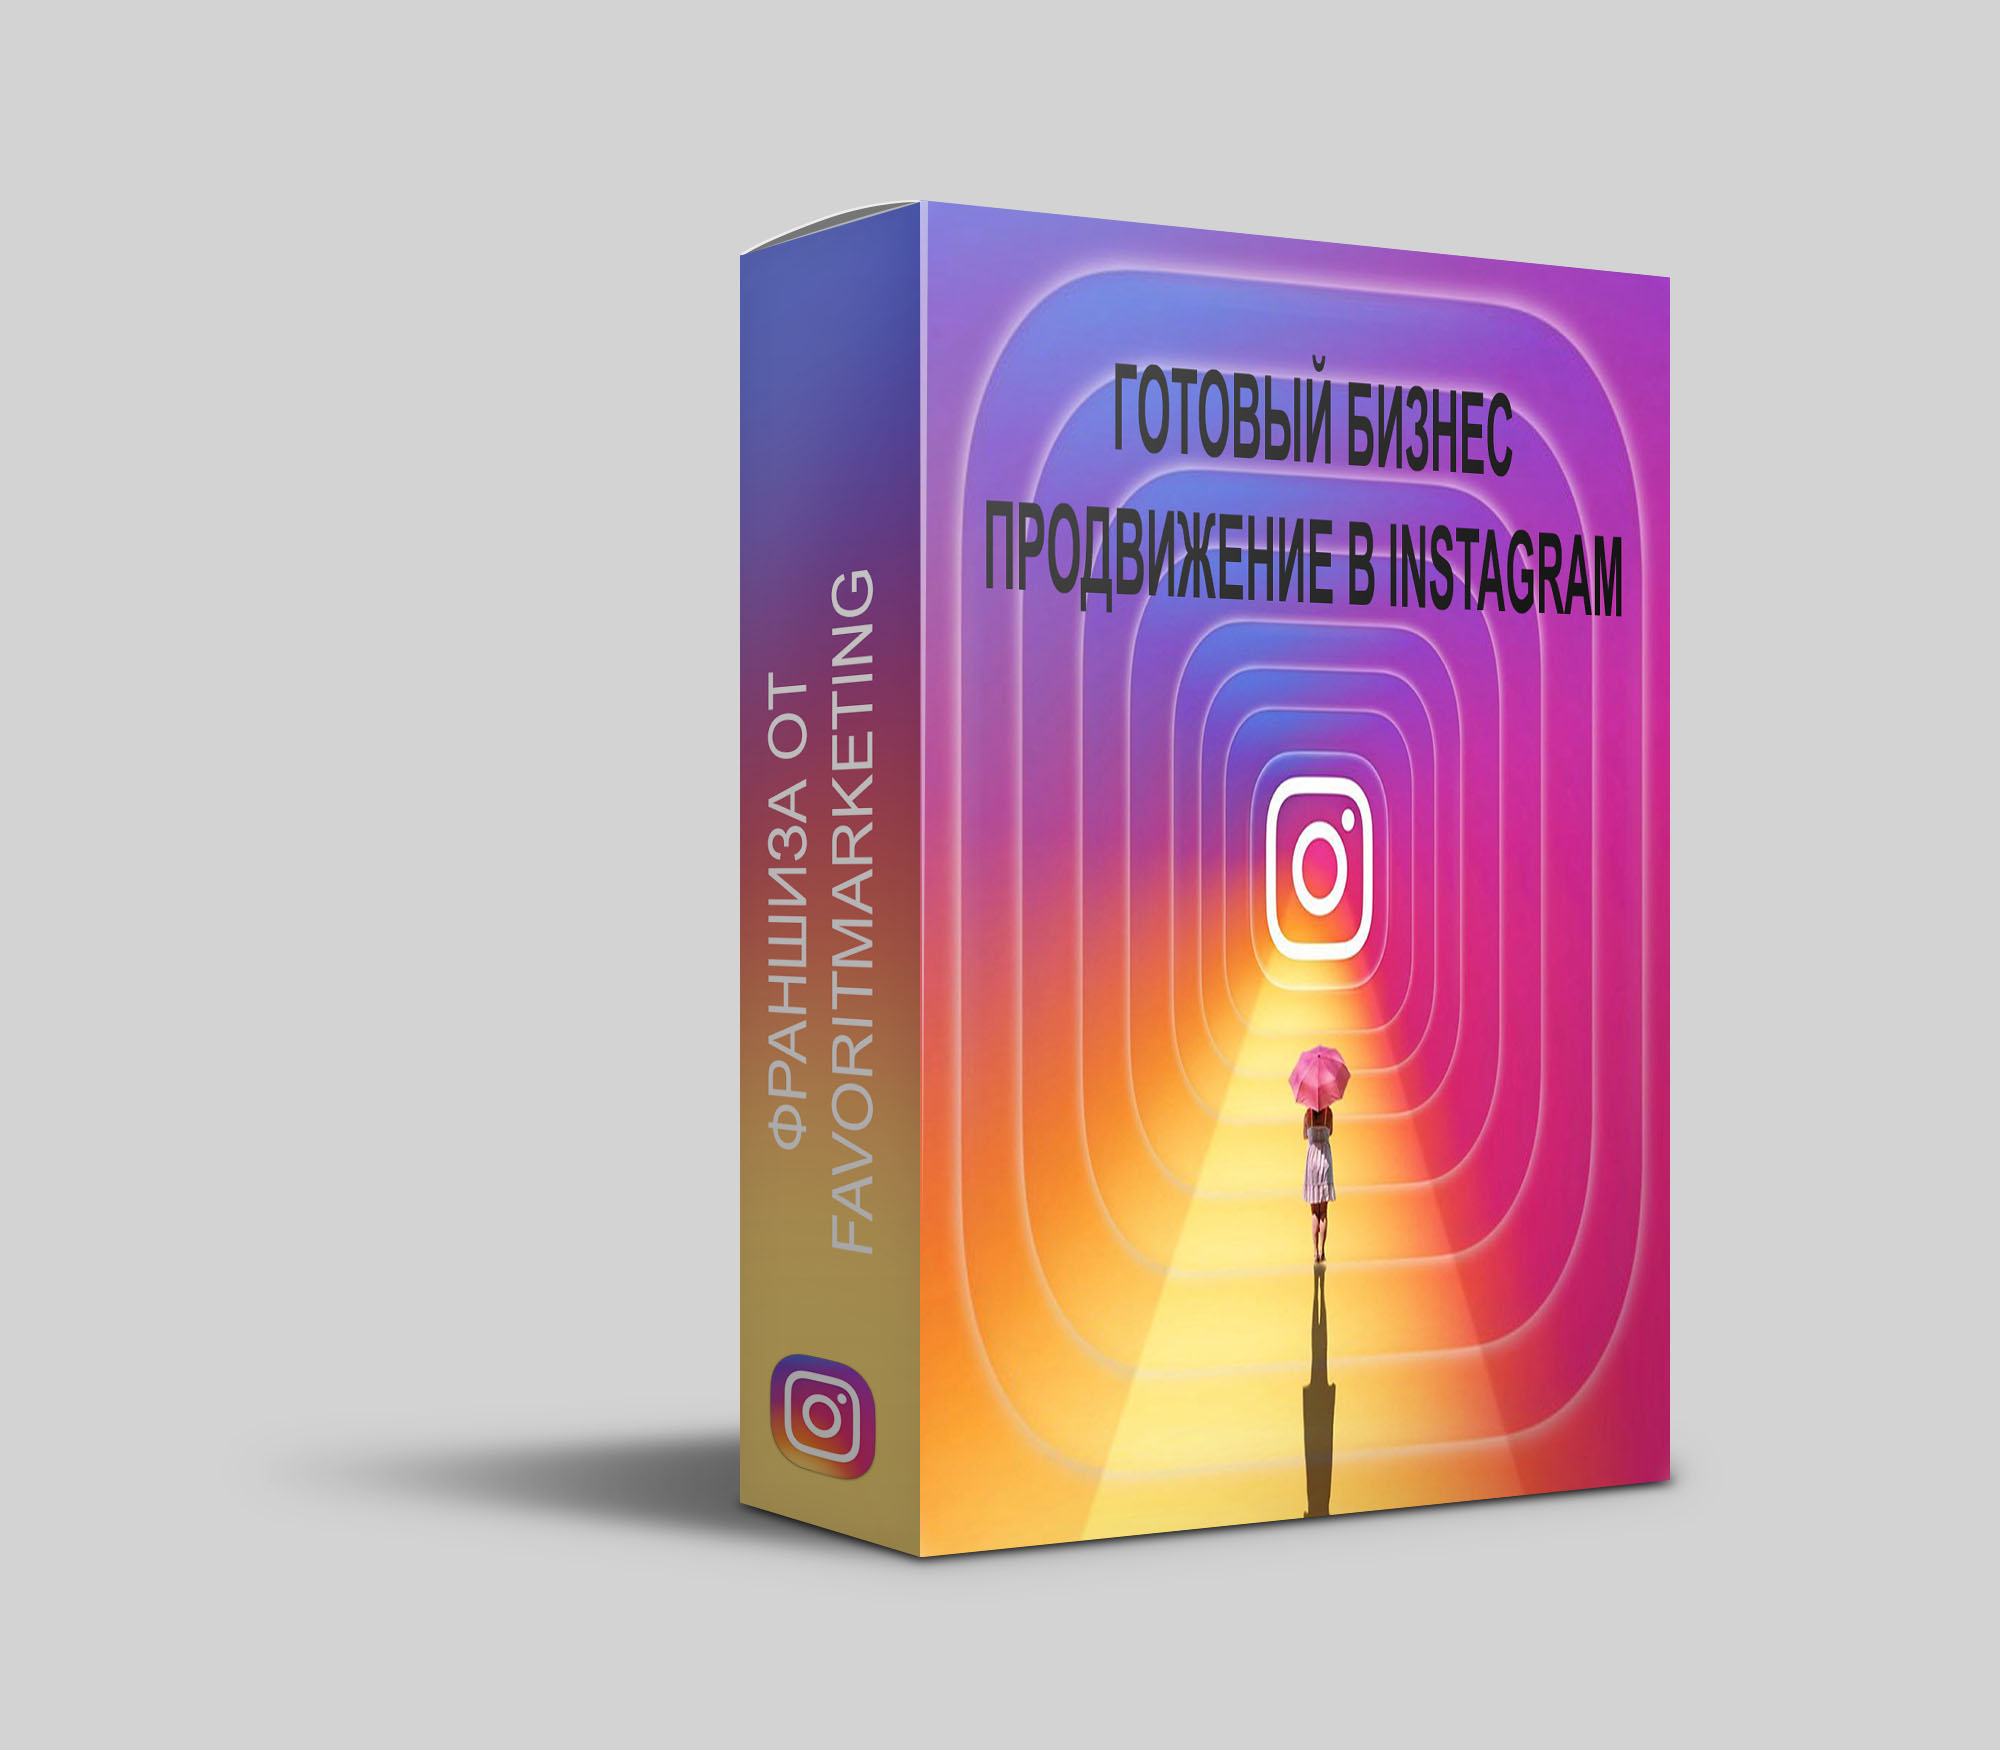 Готовый бизнес продвижение в instagram, makss, 10 апр 2017, 13:42, product-box-mockup INSTA.jpg